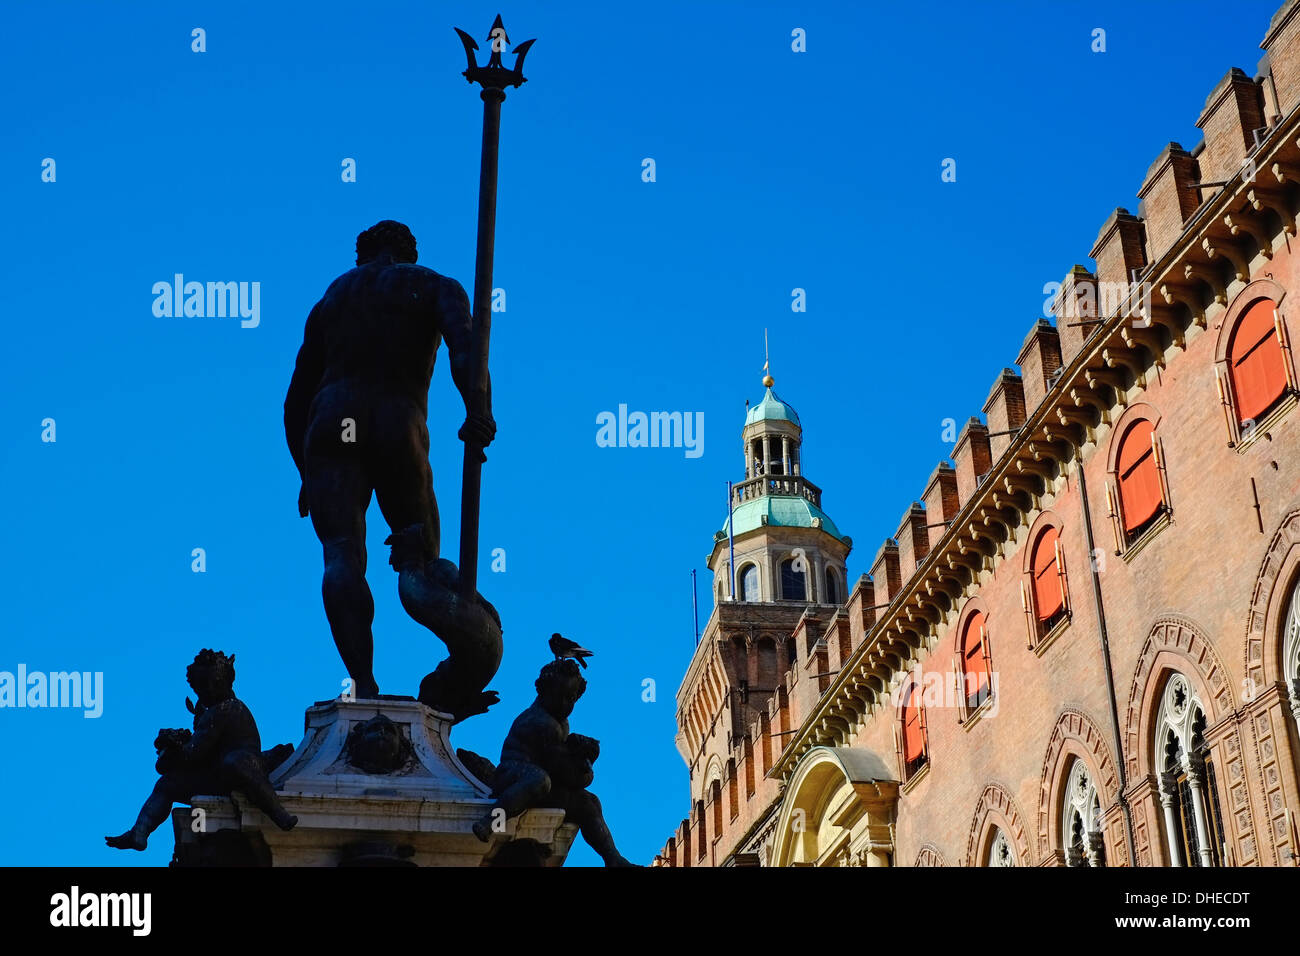 Fontana del Nettuno, Piazza Maggiore, Bologna, Emilia-Romagna, Italy, Europe Stock Photo